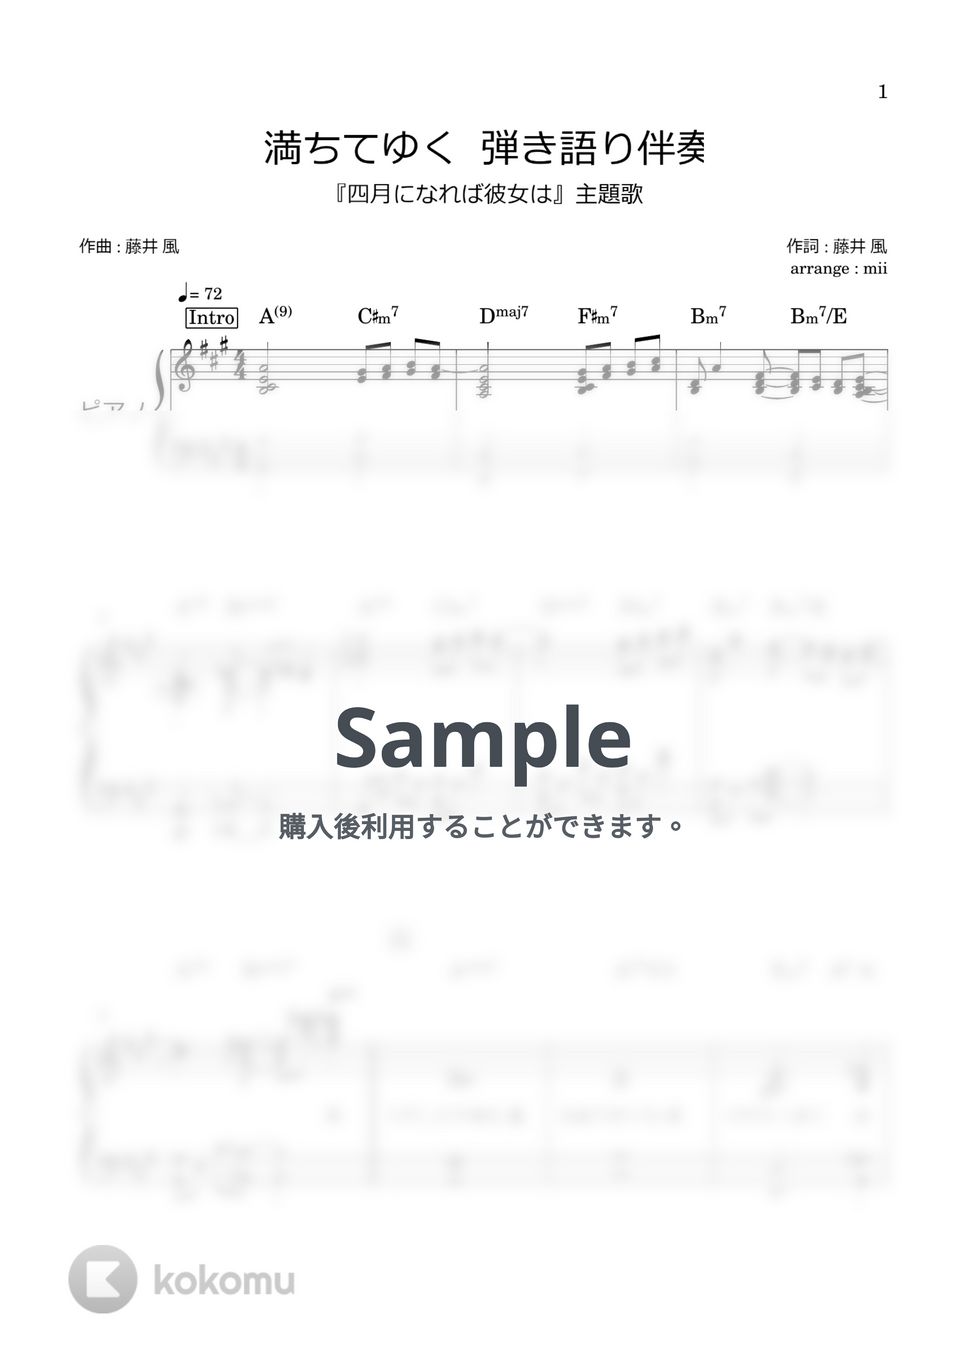 藤井風 - 満ちてゆく (弾き語り伴奏のみ) by miiの楽譜棚